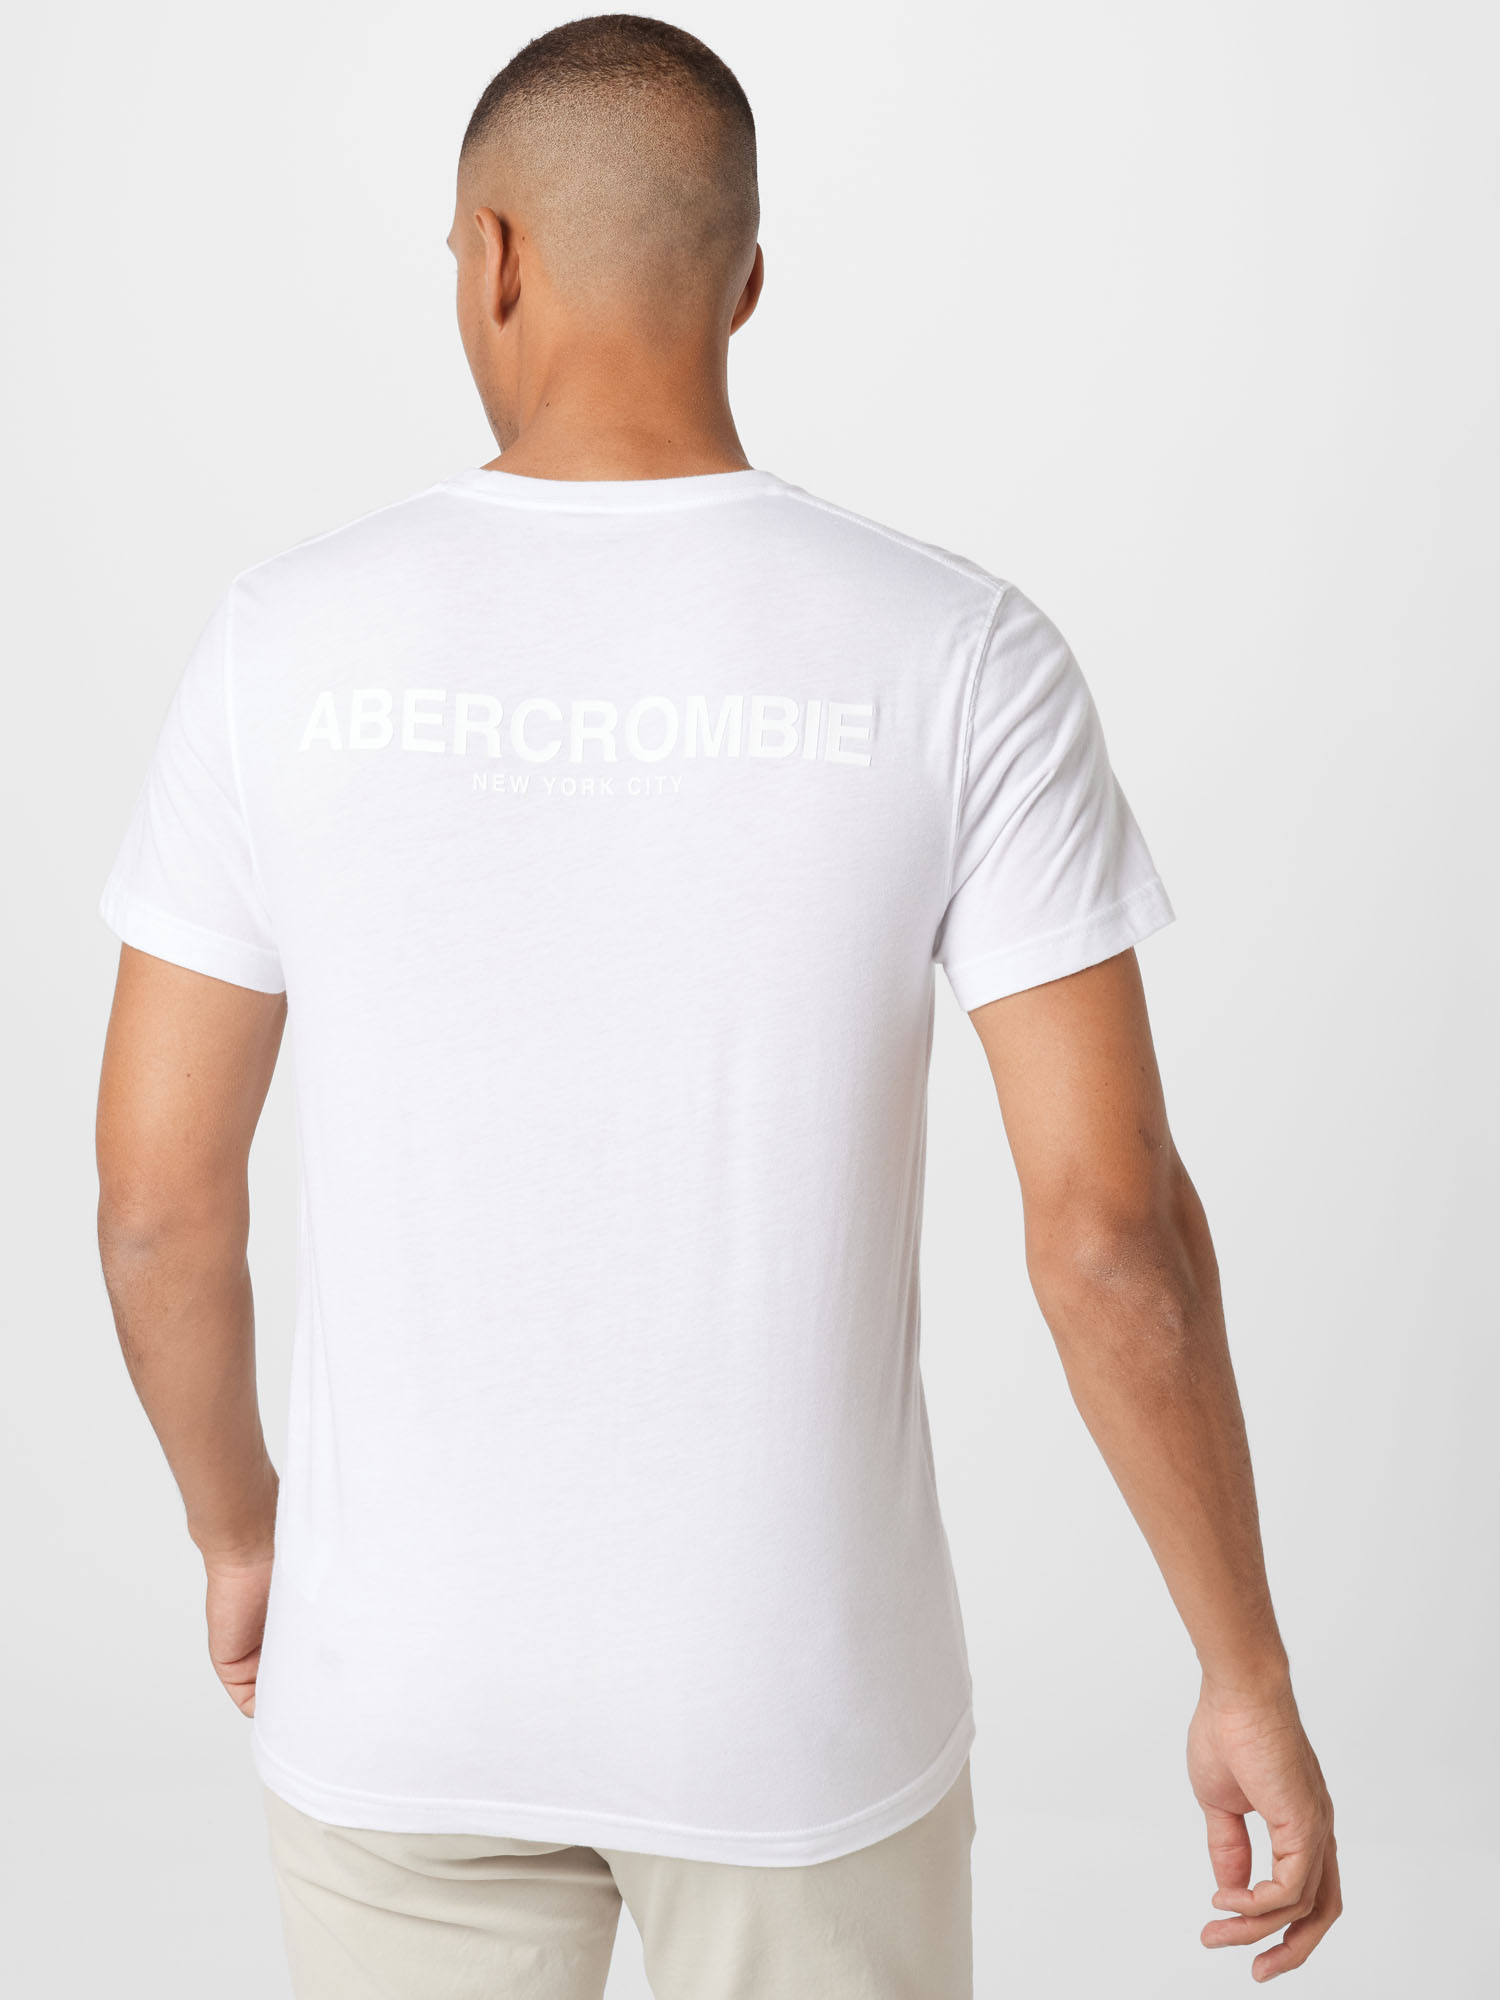 Abercrombie & Fitch Koszulka w kolorze Zielony, Białym 